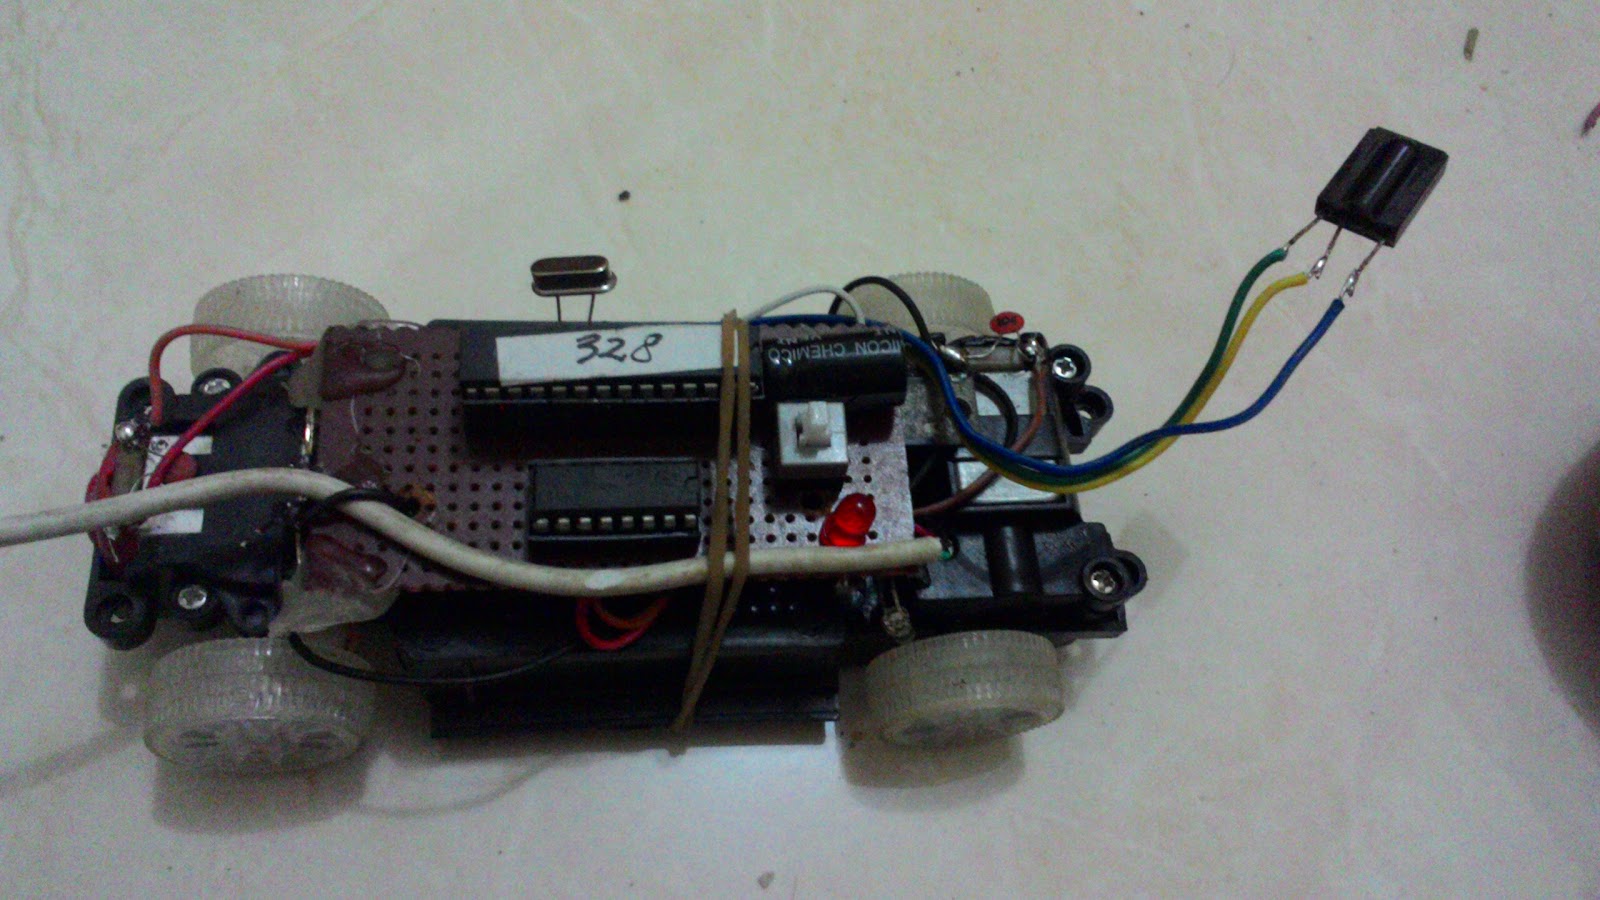 Membuat Mobil Remote Control Dengan Remote TV Dengan Mikrokontroller